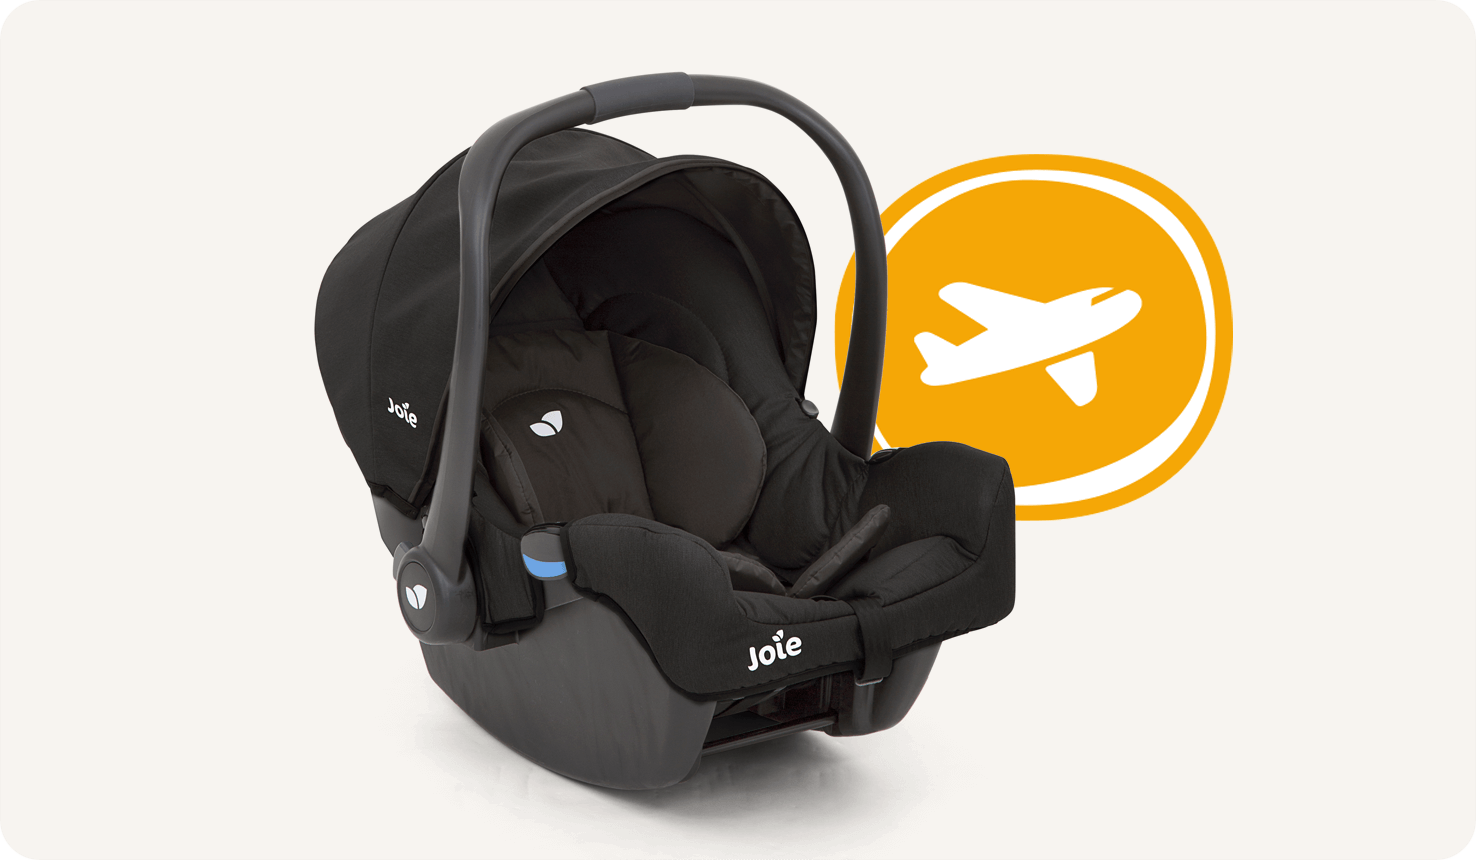 Rechtwinklige Ansicht des Joie gemm Babyschale in Schwarz mit einem Flugzeugsymbol daneben.